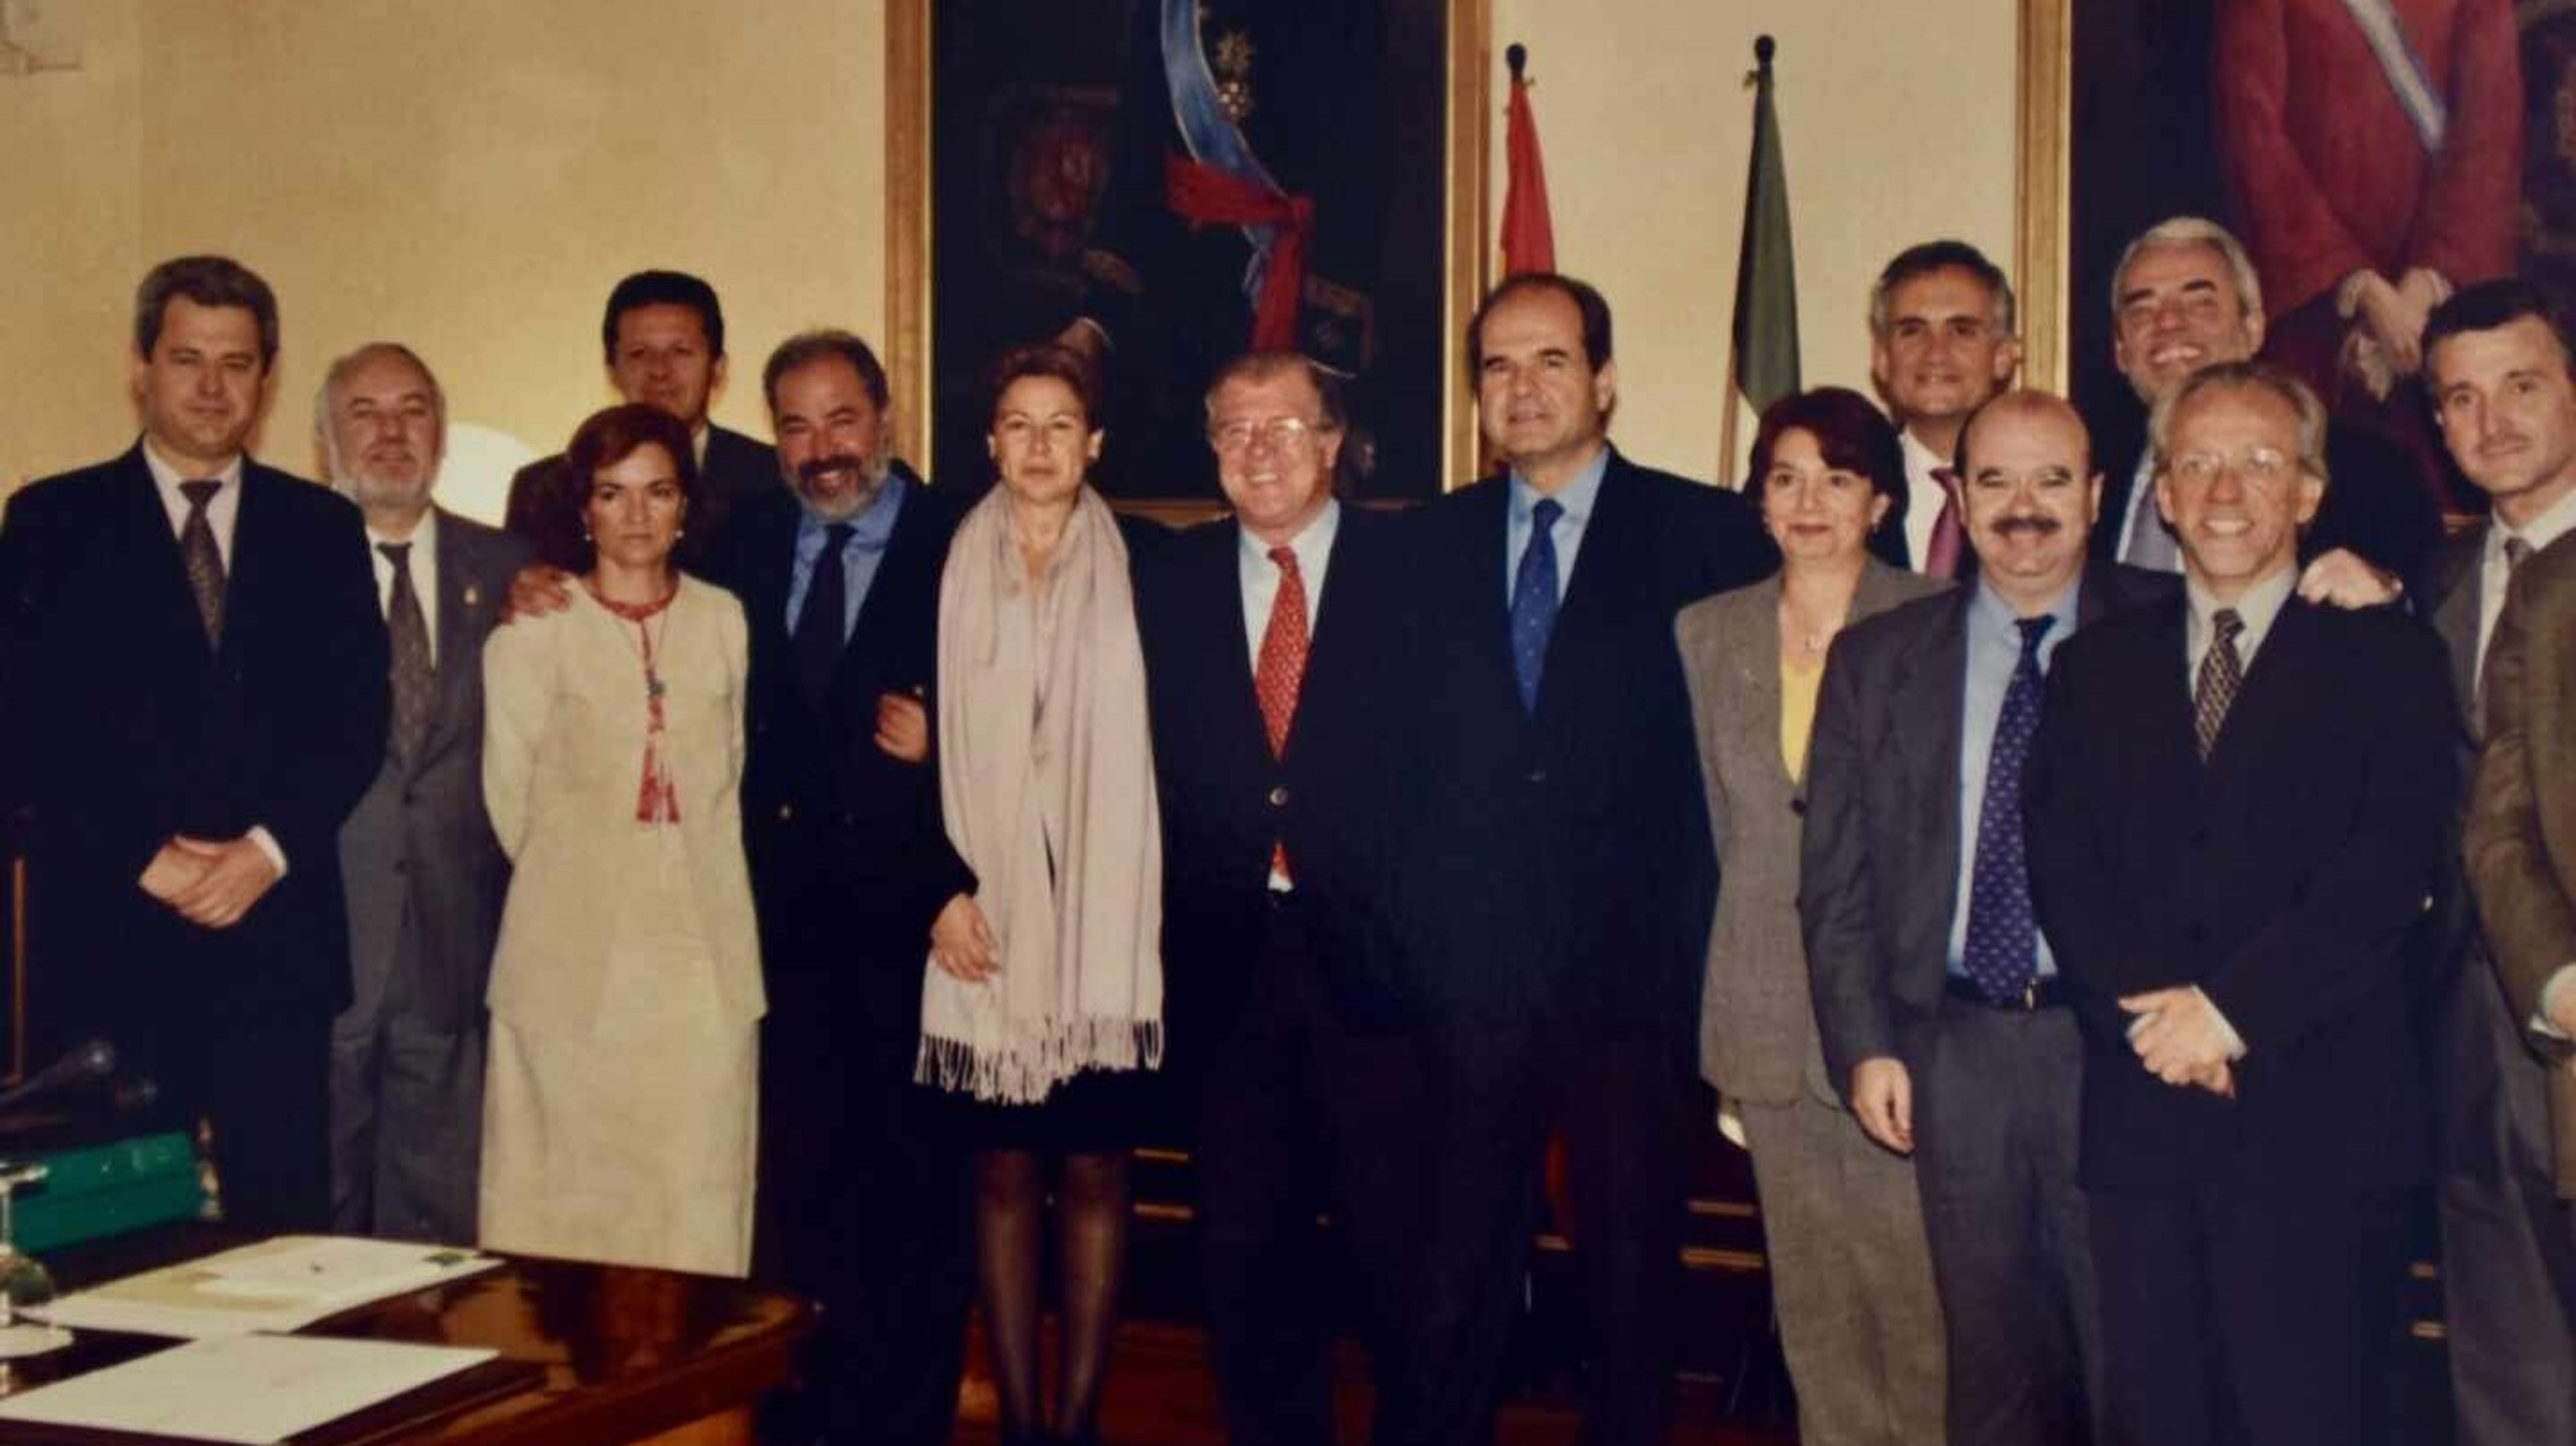 Manuel Chaves y la mayoría de los consejeros que formaron parte de su gabinete en la legislatura 1996-2000, entre ellos Carmen Calvo (tercera por laizquierda).